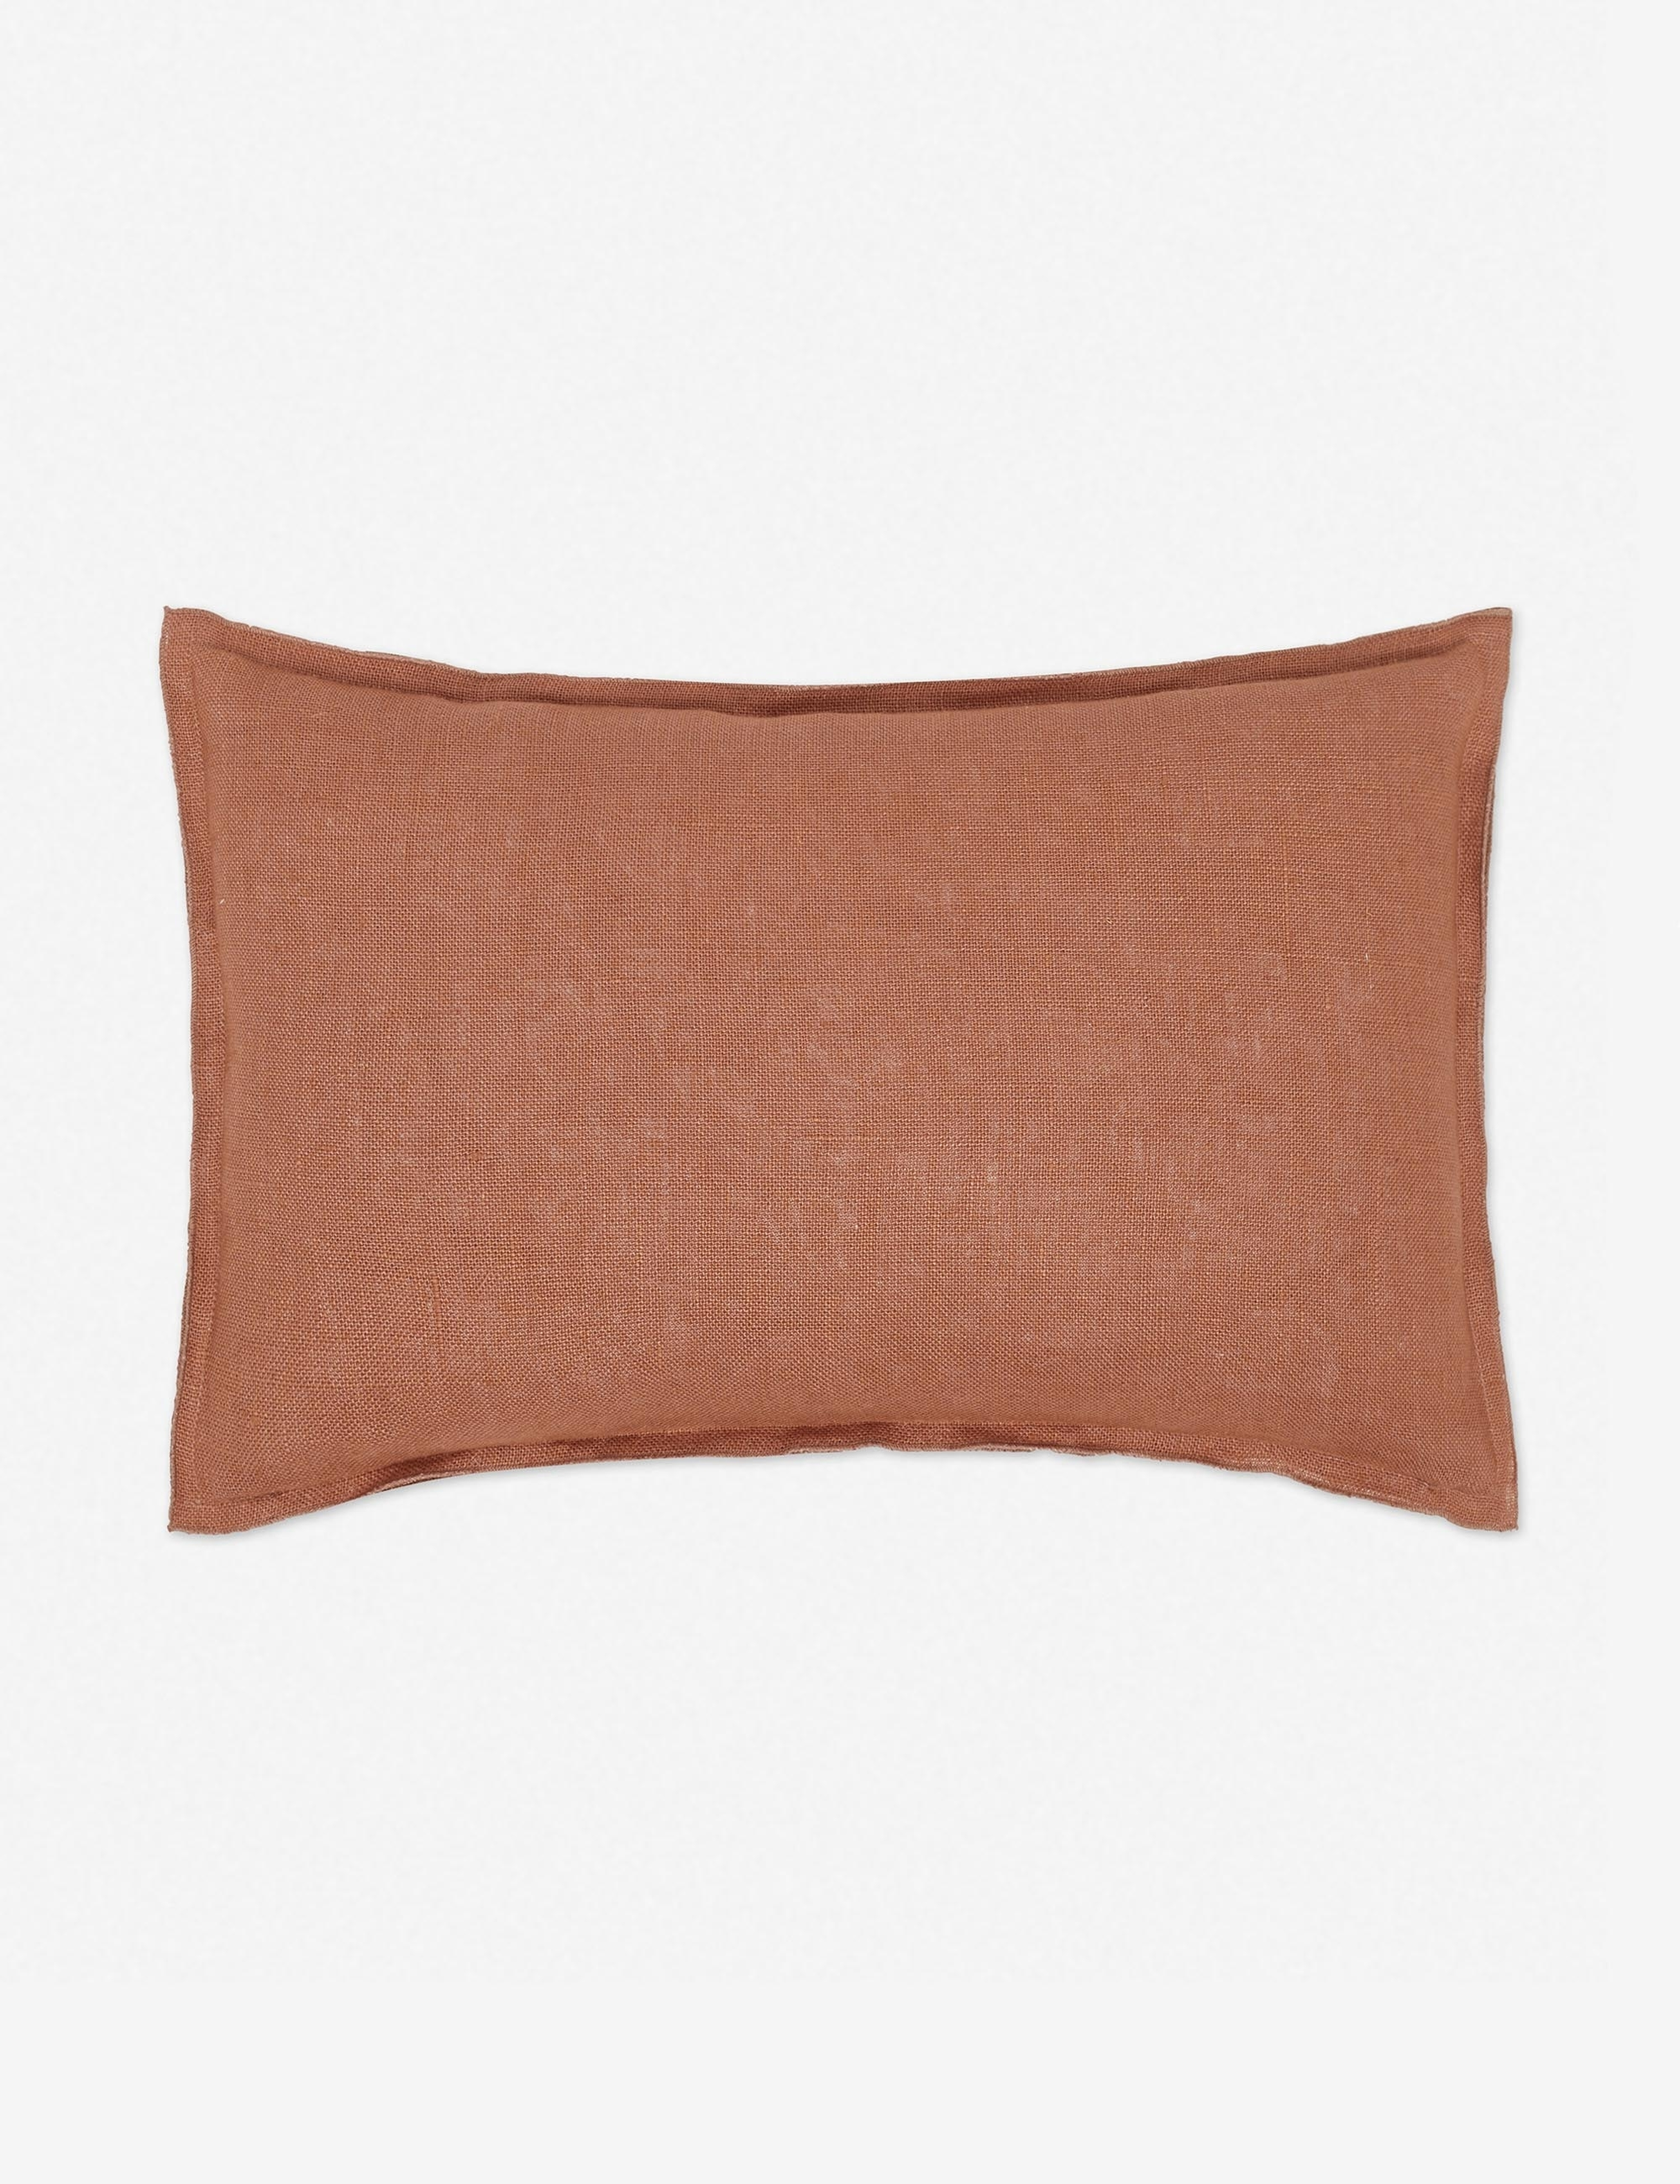 Arlo Linen Lumbar Pillow, Rust - Lulu and Georgia